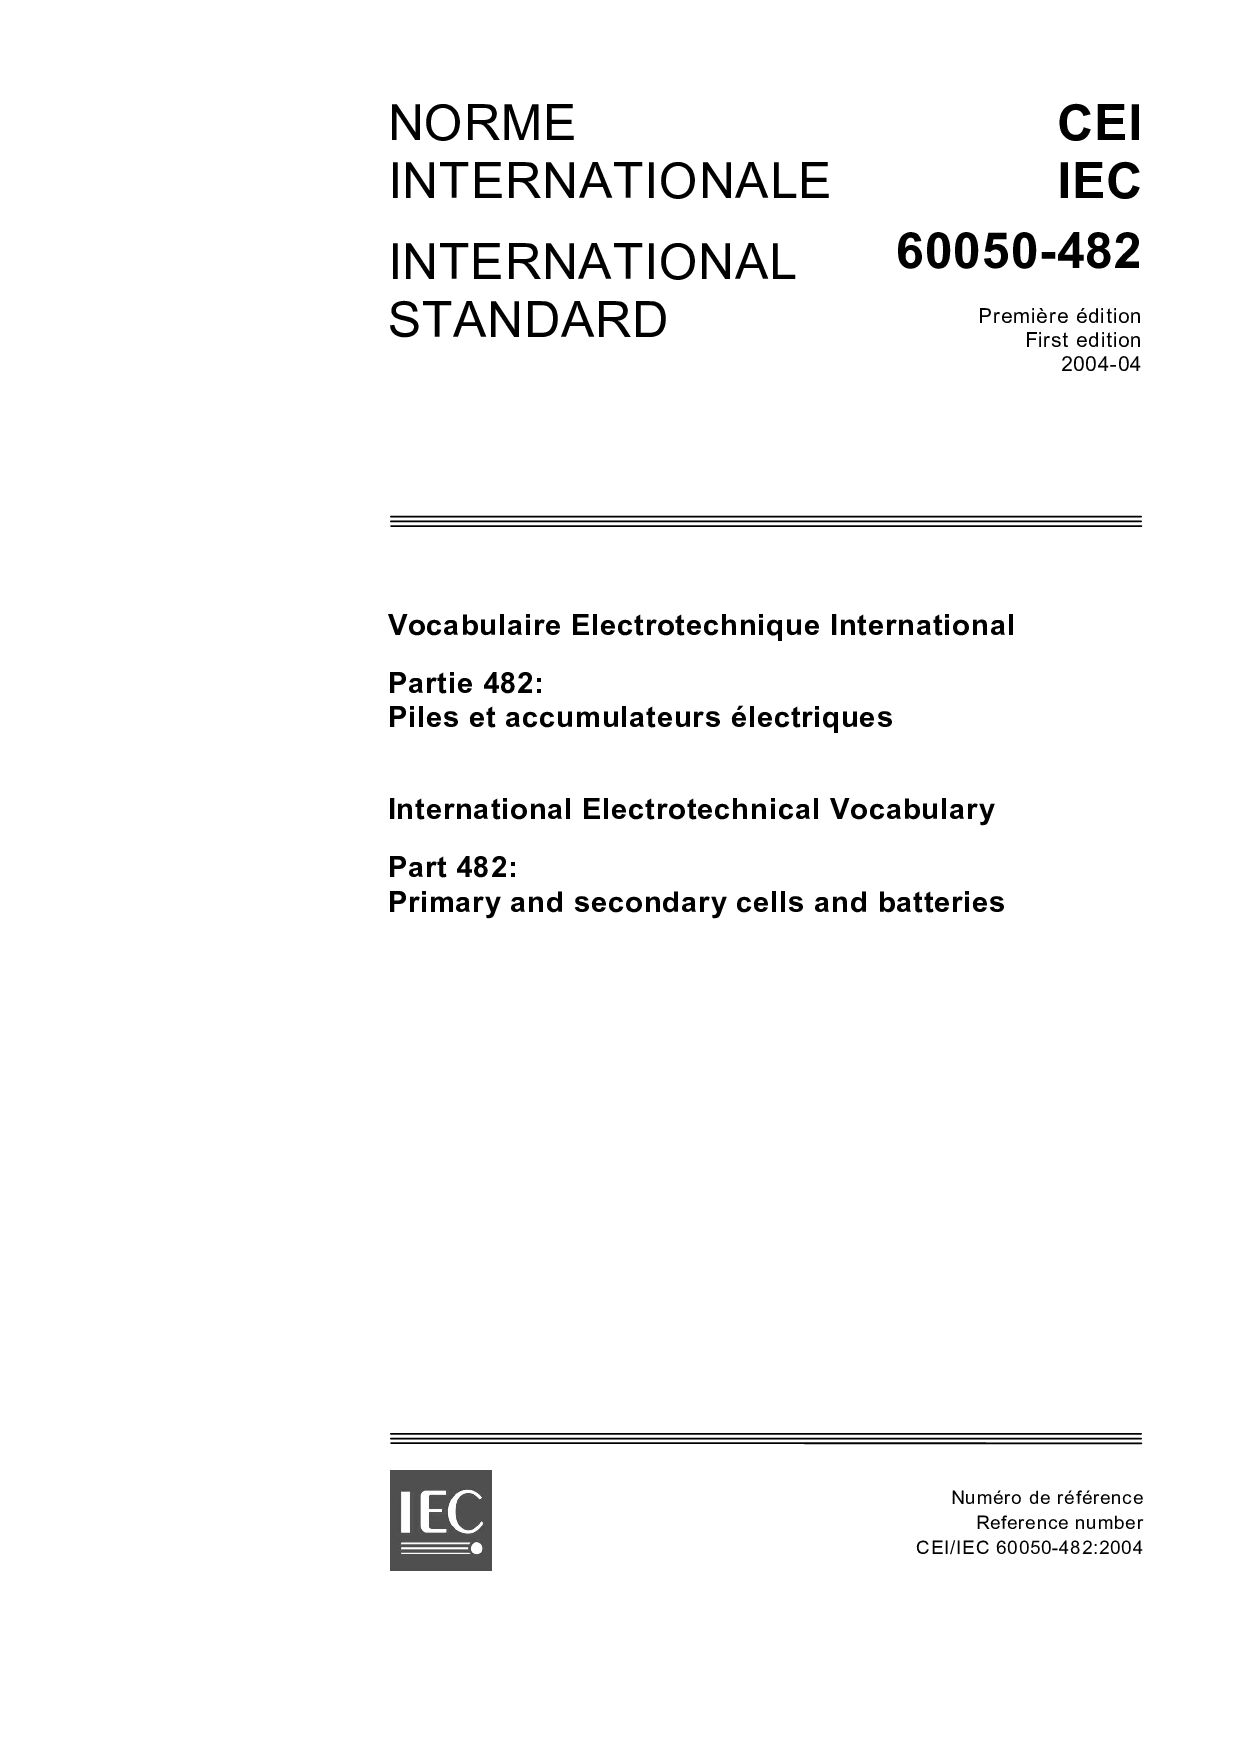 IEC 60050-482:2004